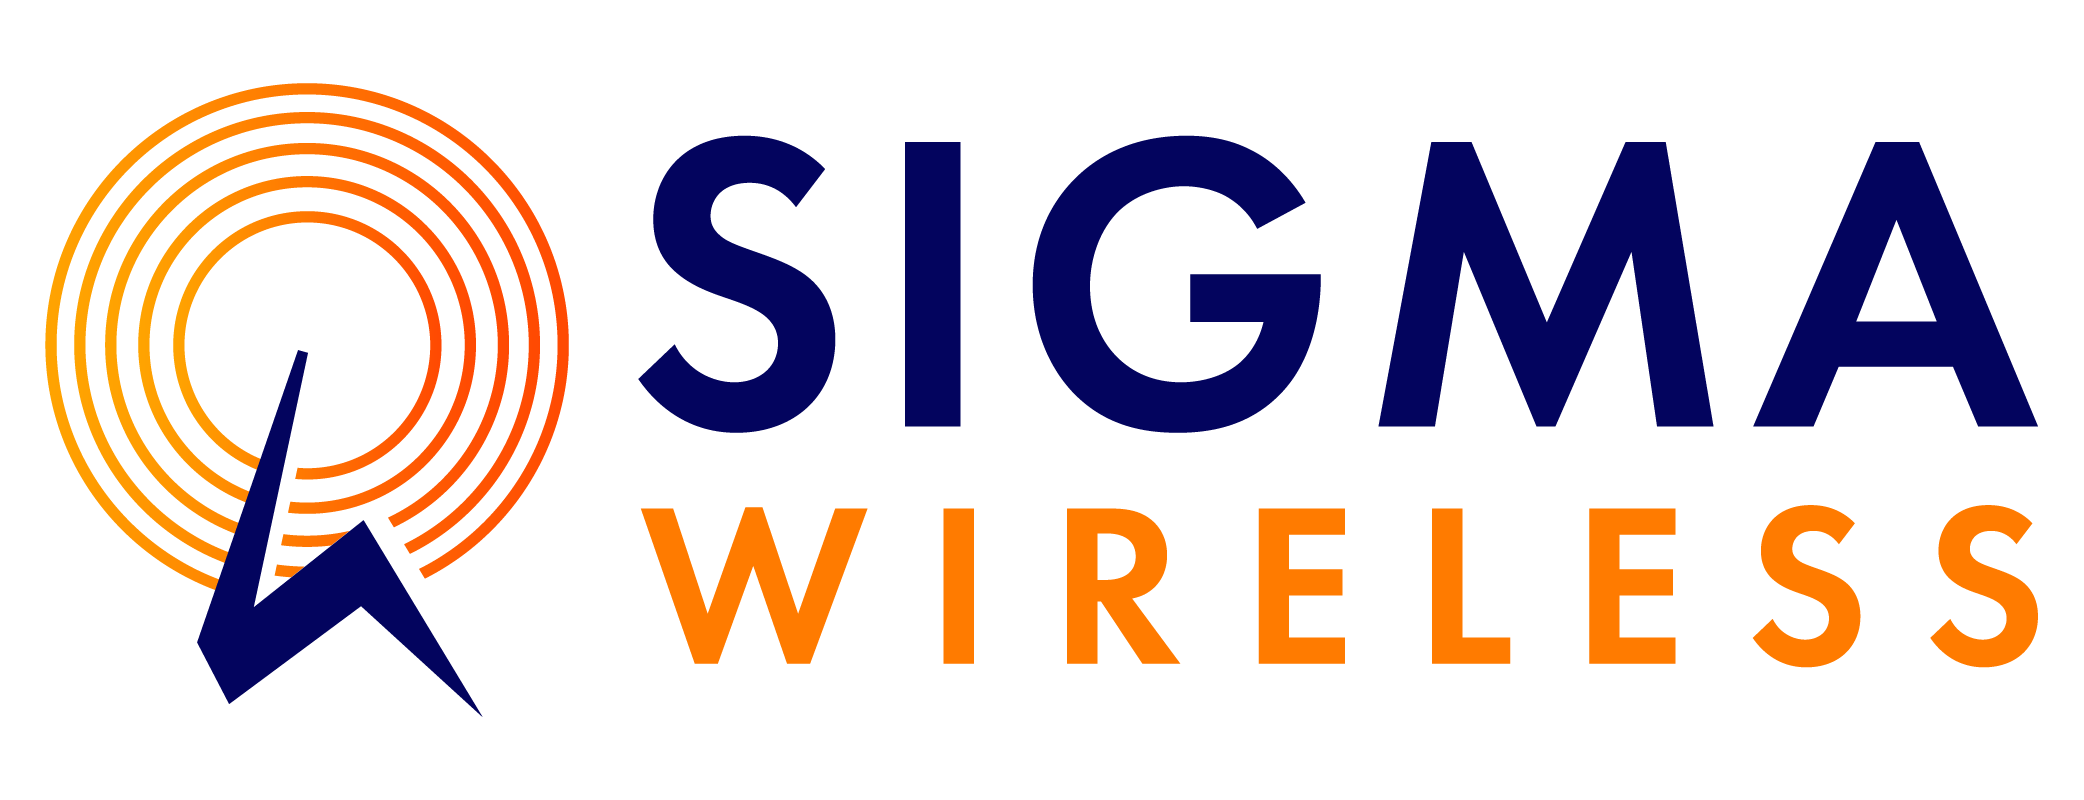 Sigma Wireless Communications